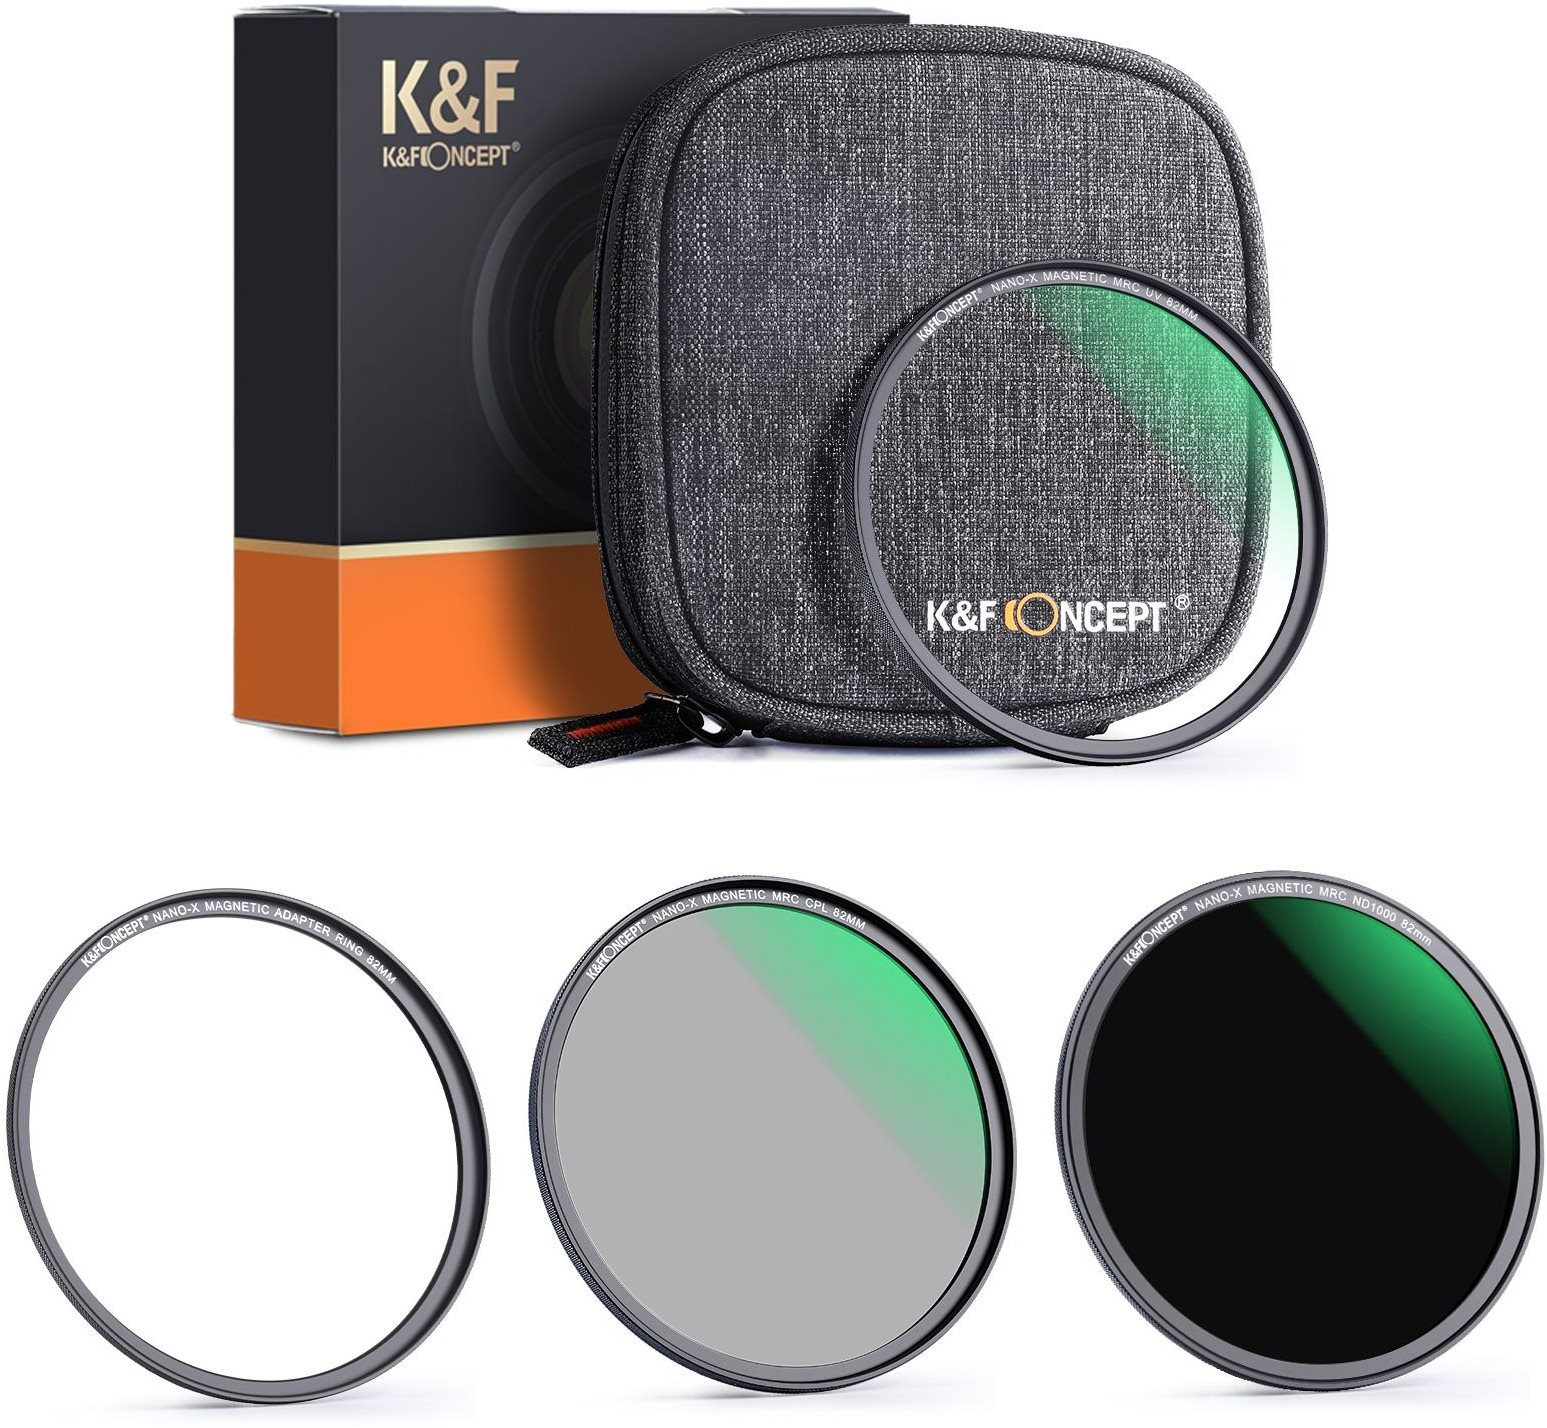 K&F Concept mágneses szűrőkészlet 3 db (MCUV, CPL, ND1000) - 49 mm